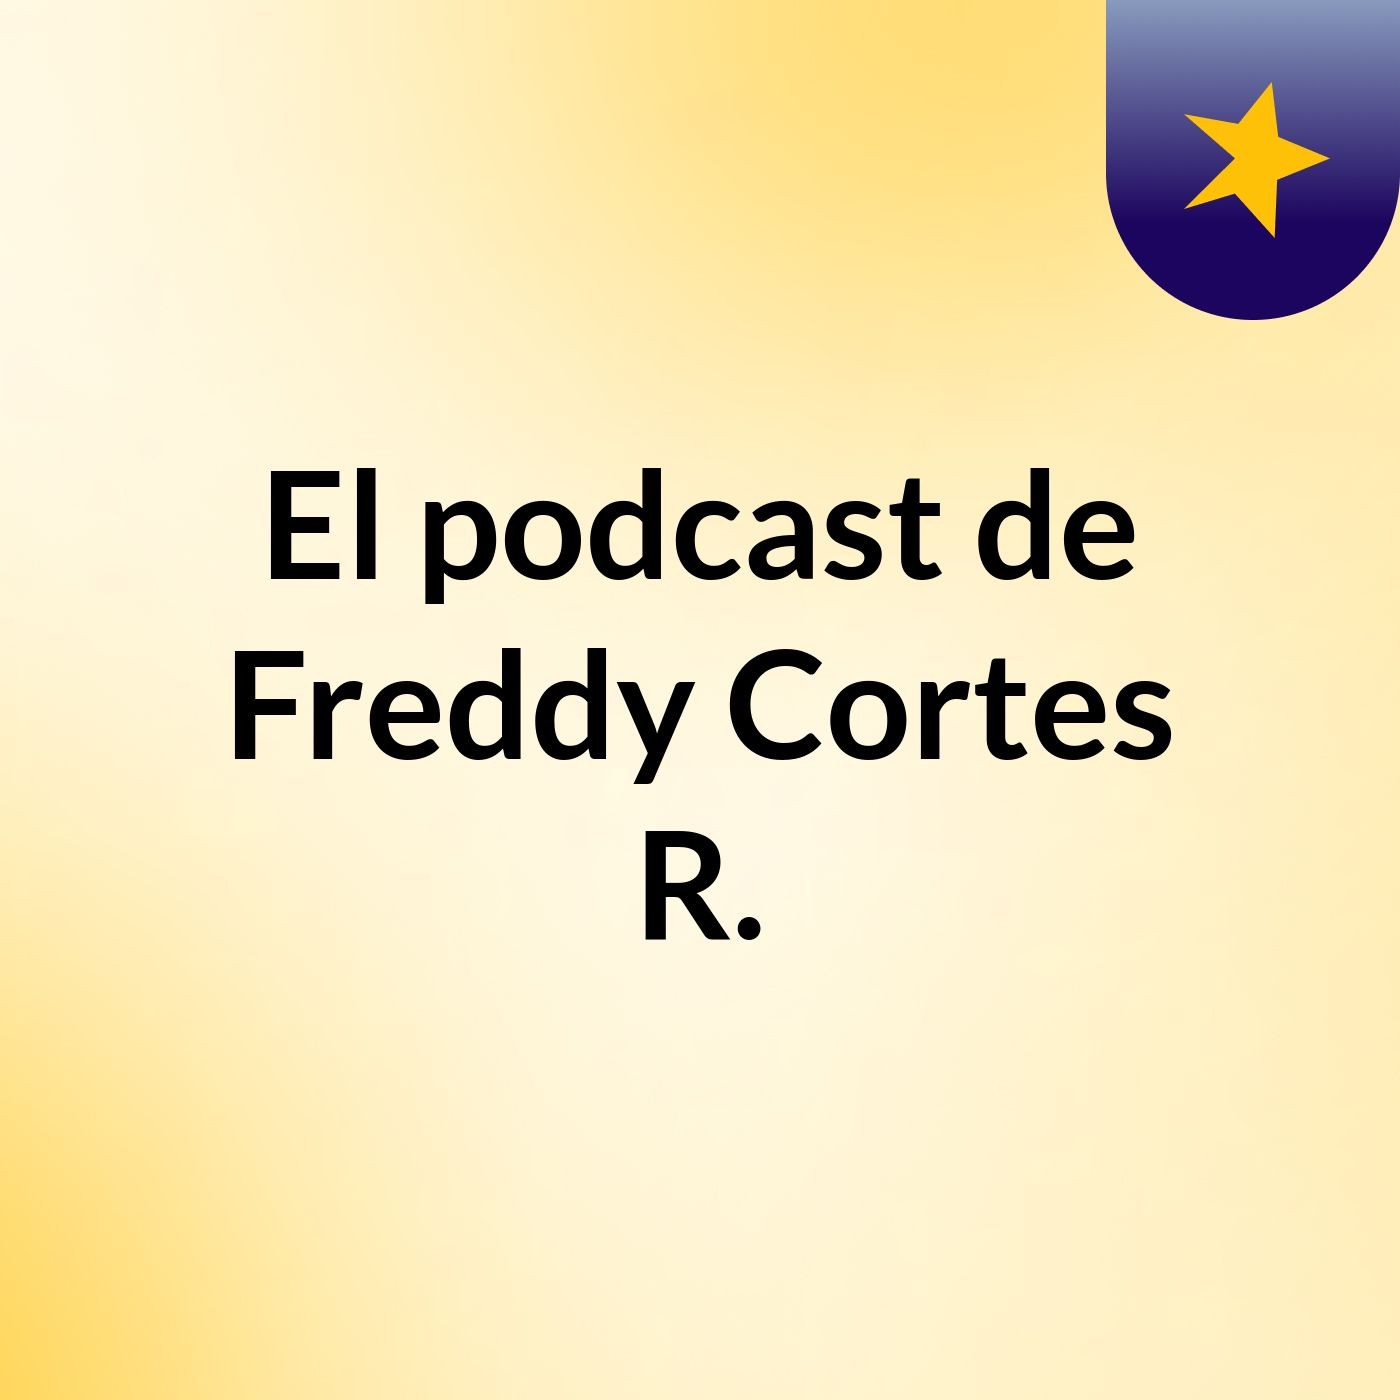 El podcast de Freddy Cortes R.